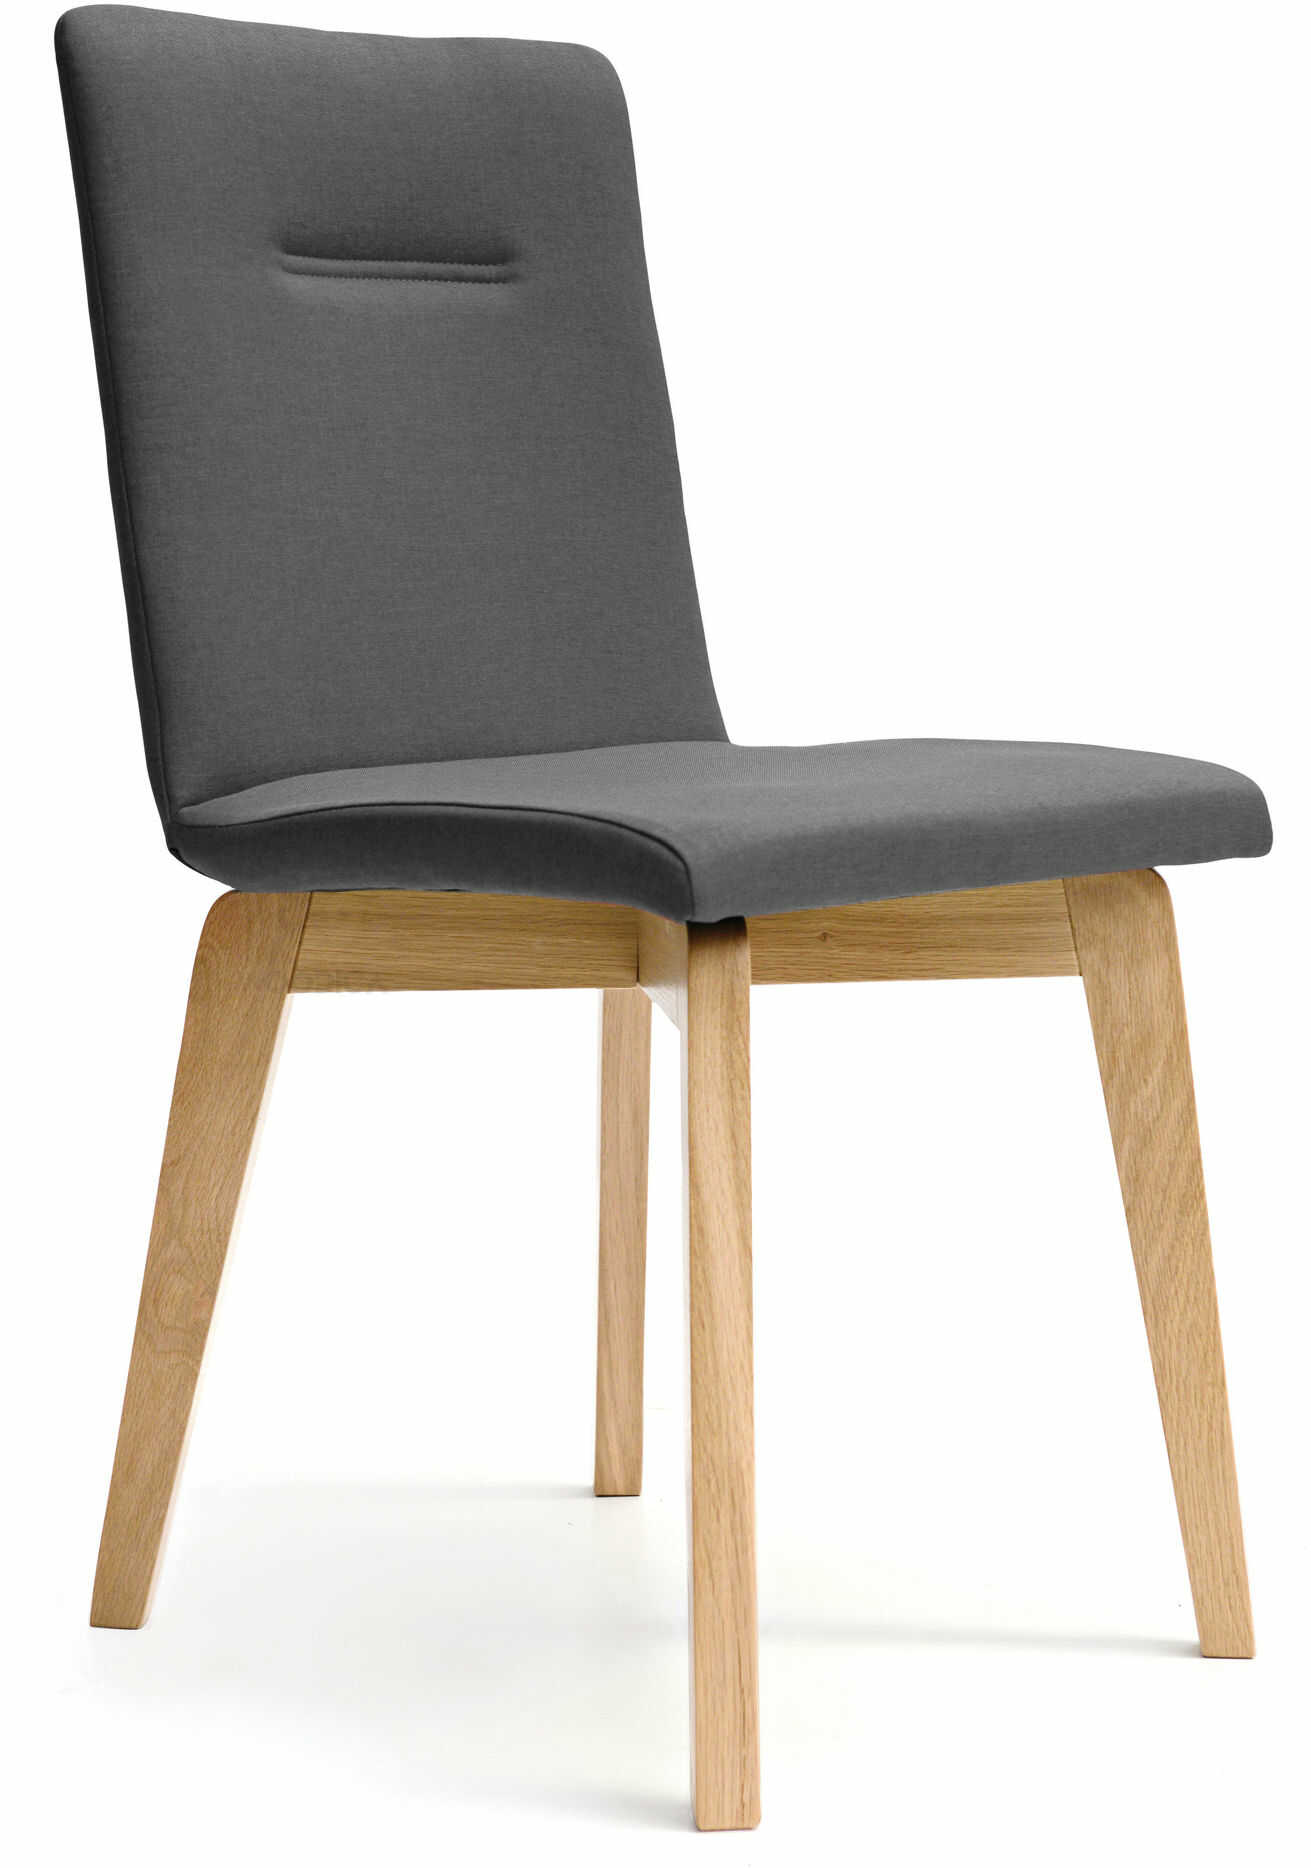 Krzesło dębowe tapicerowane NK-17